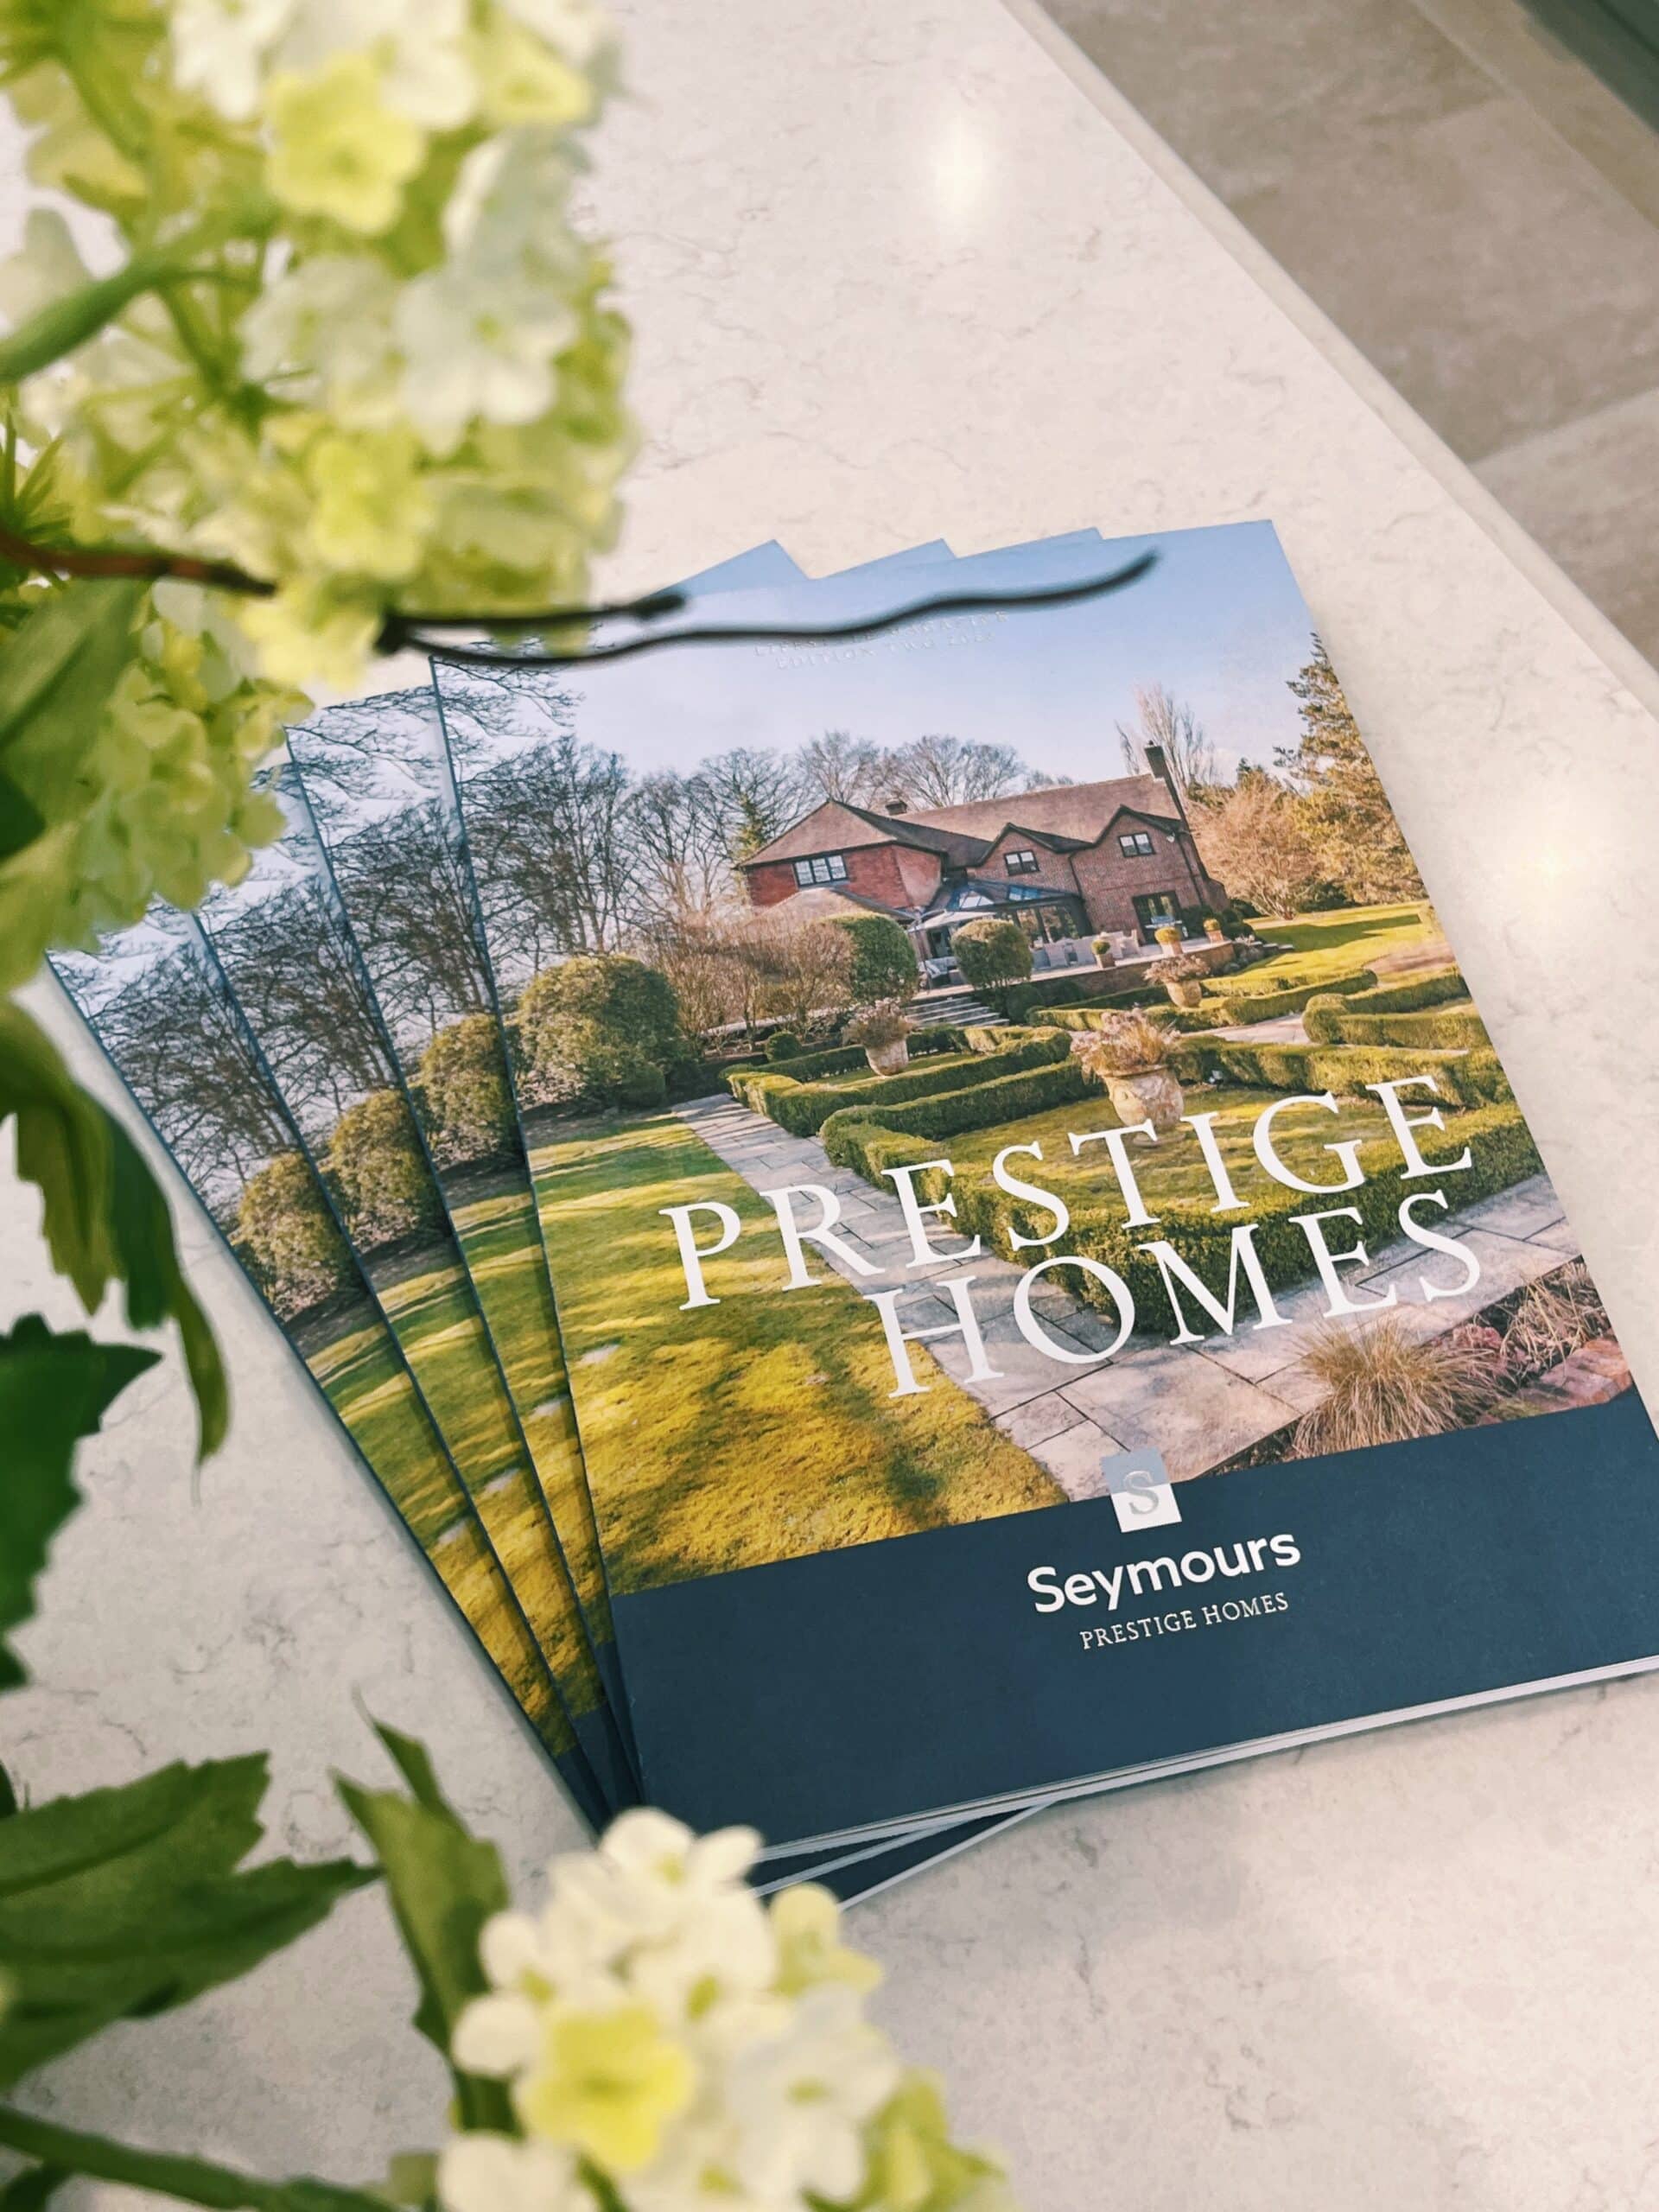 Seymours Prestige Homes